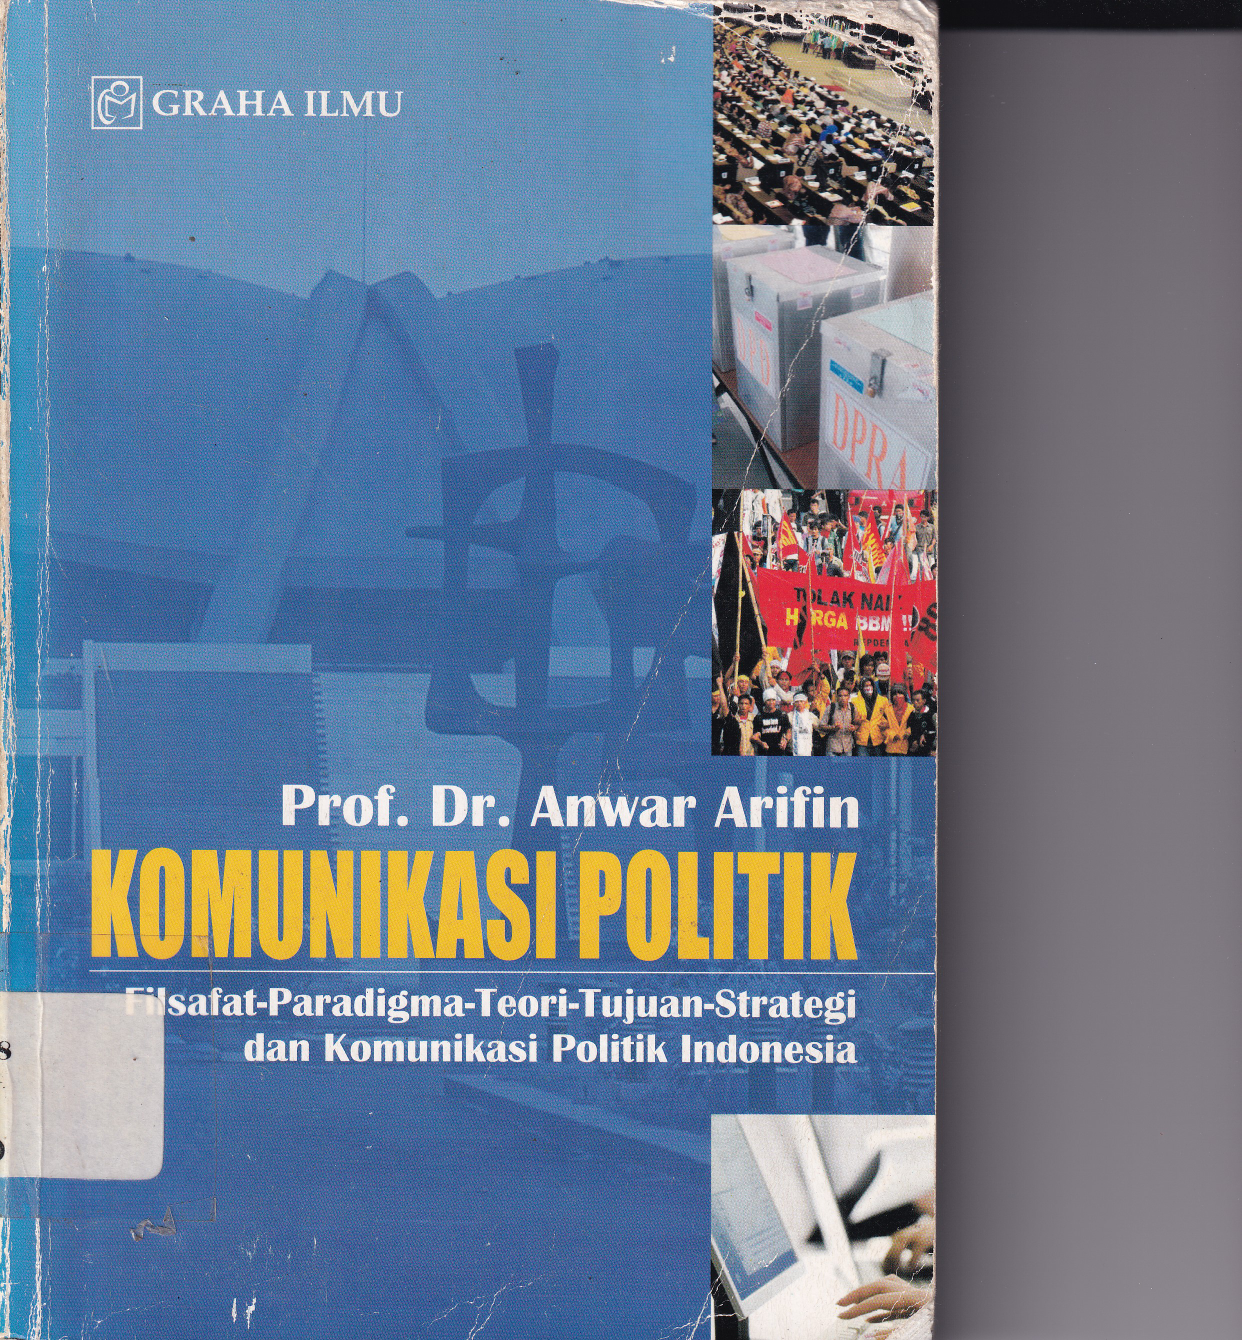 Komunikasi Politik: Filsafat-Paradigma-Teori-Tujuan-Strategi dan Komunikasi Politik Indonesia (Ed. 2, Cet. 1)